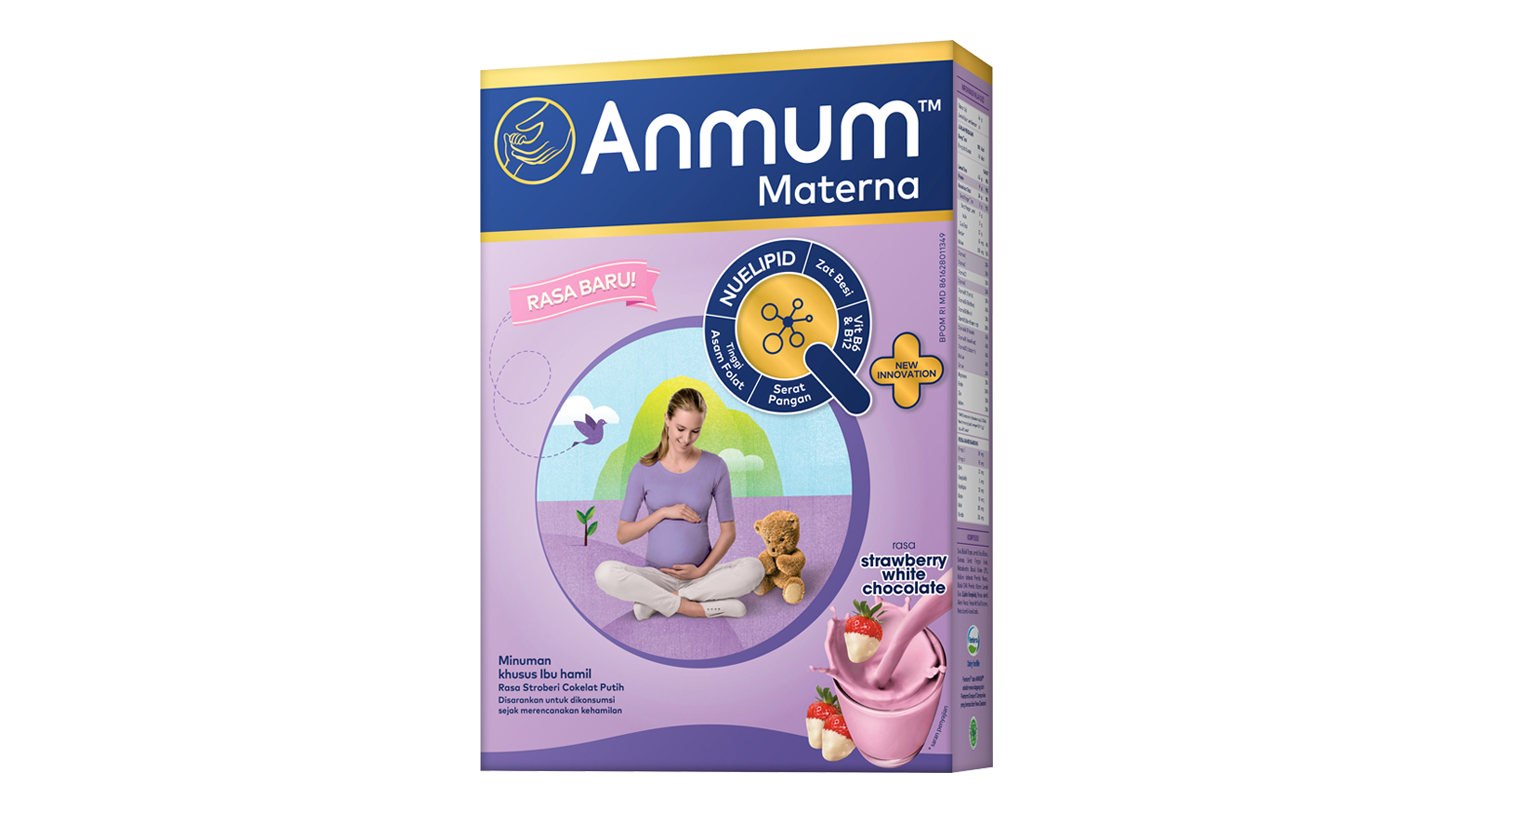 1. Anmum Materna menawarkan kandungan Inulin susunya